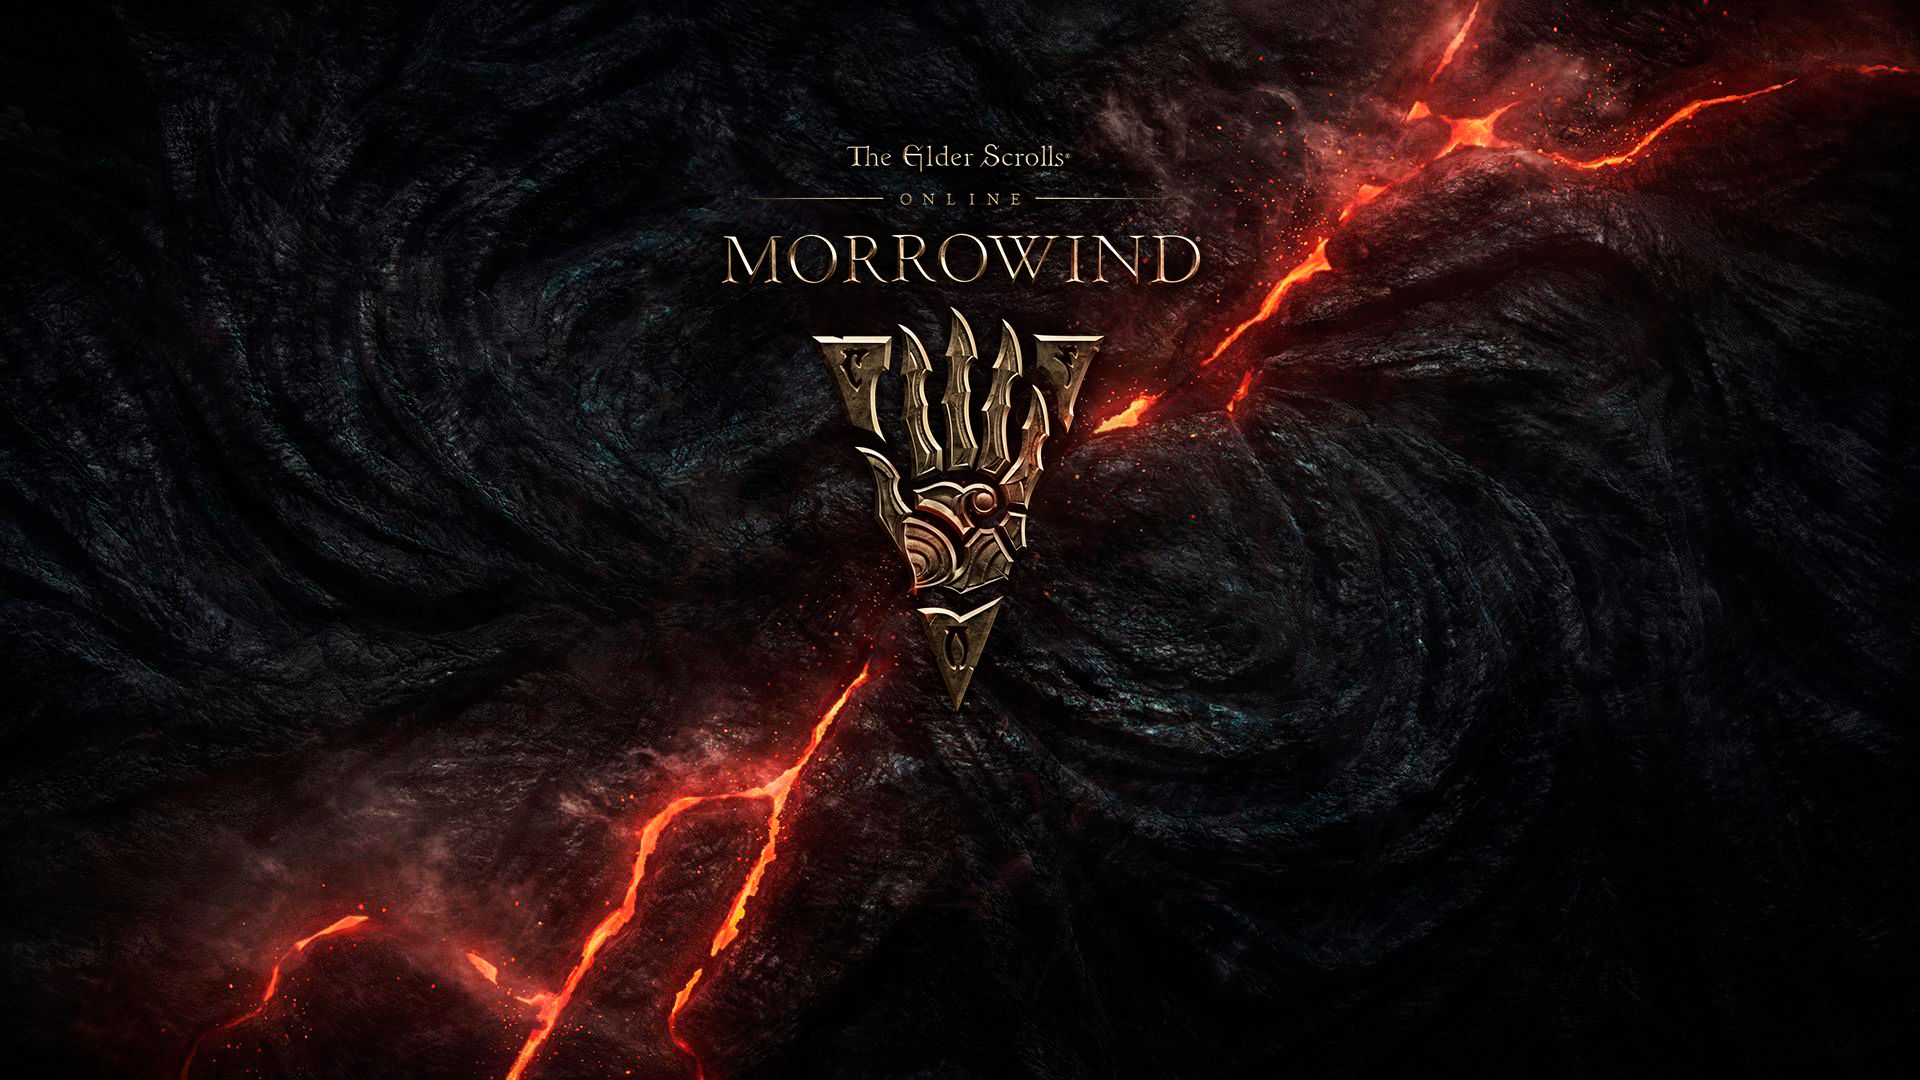 Laden Sie The Elder Scrolls Online: Morrowind HD-Desktop-Hintergründe herunter